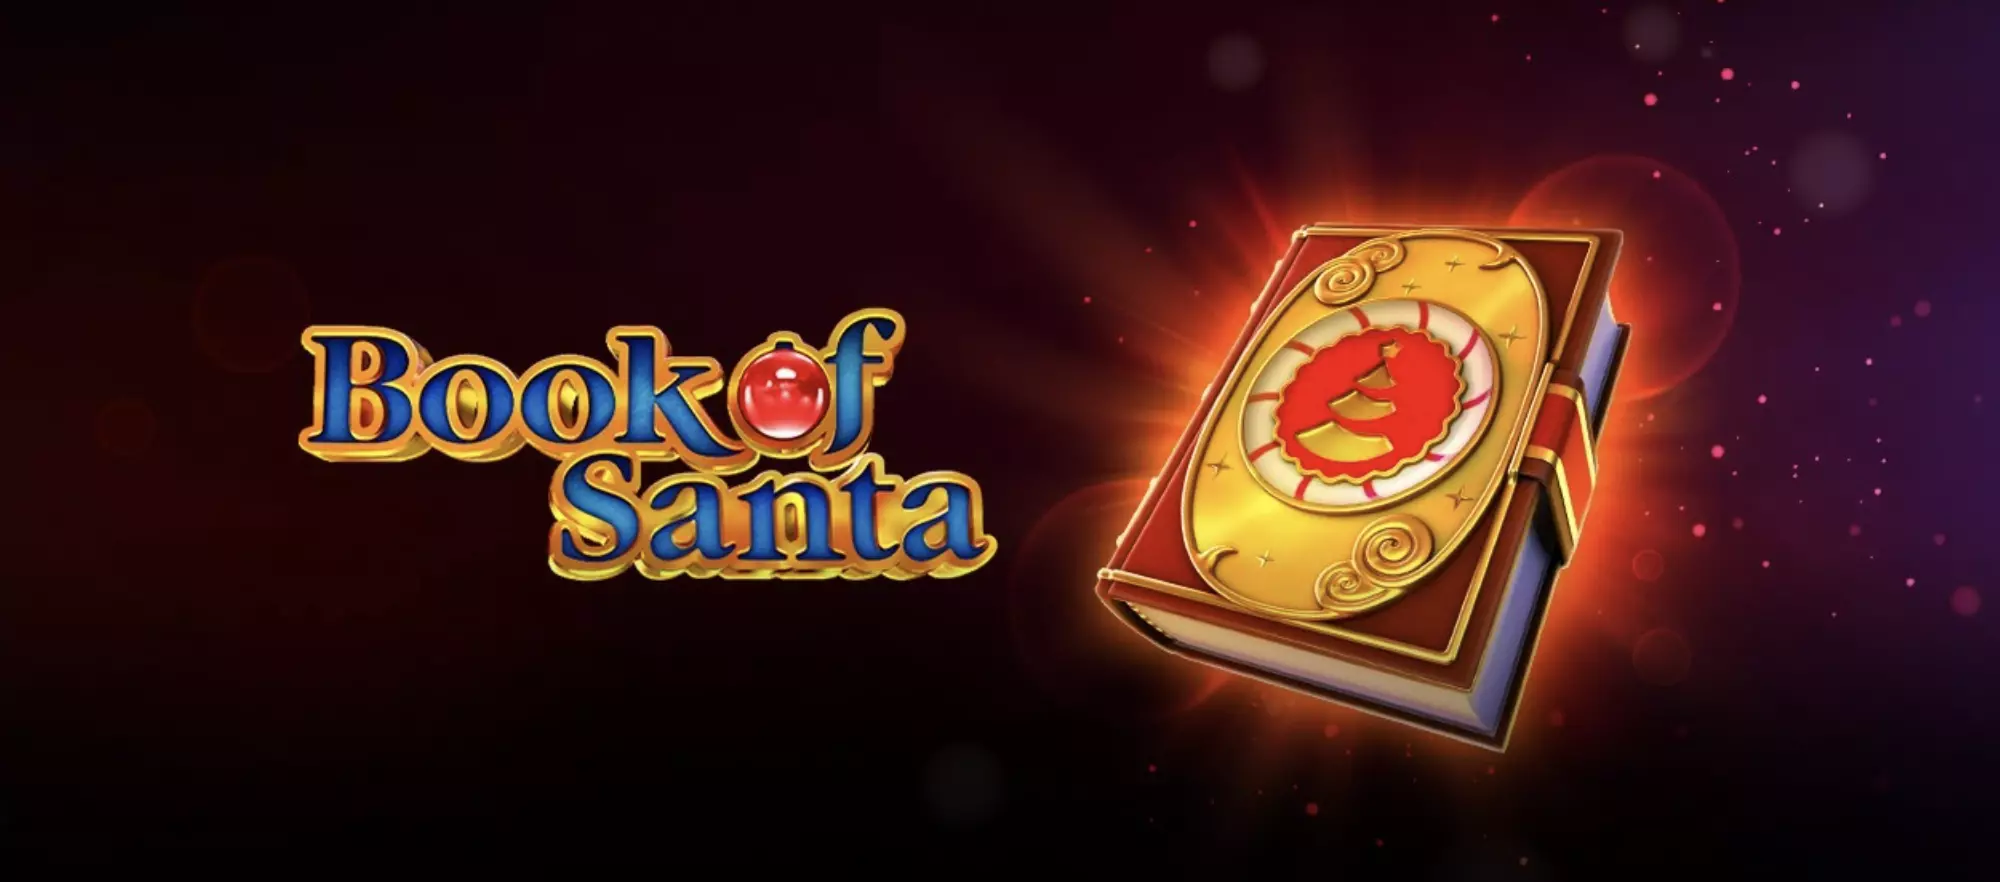 Book of Santa slot